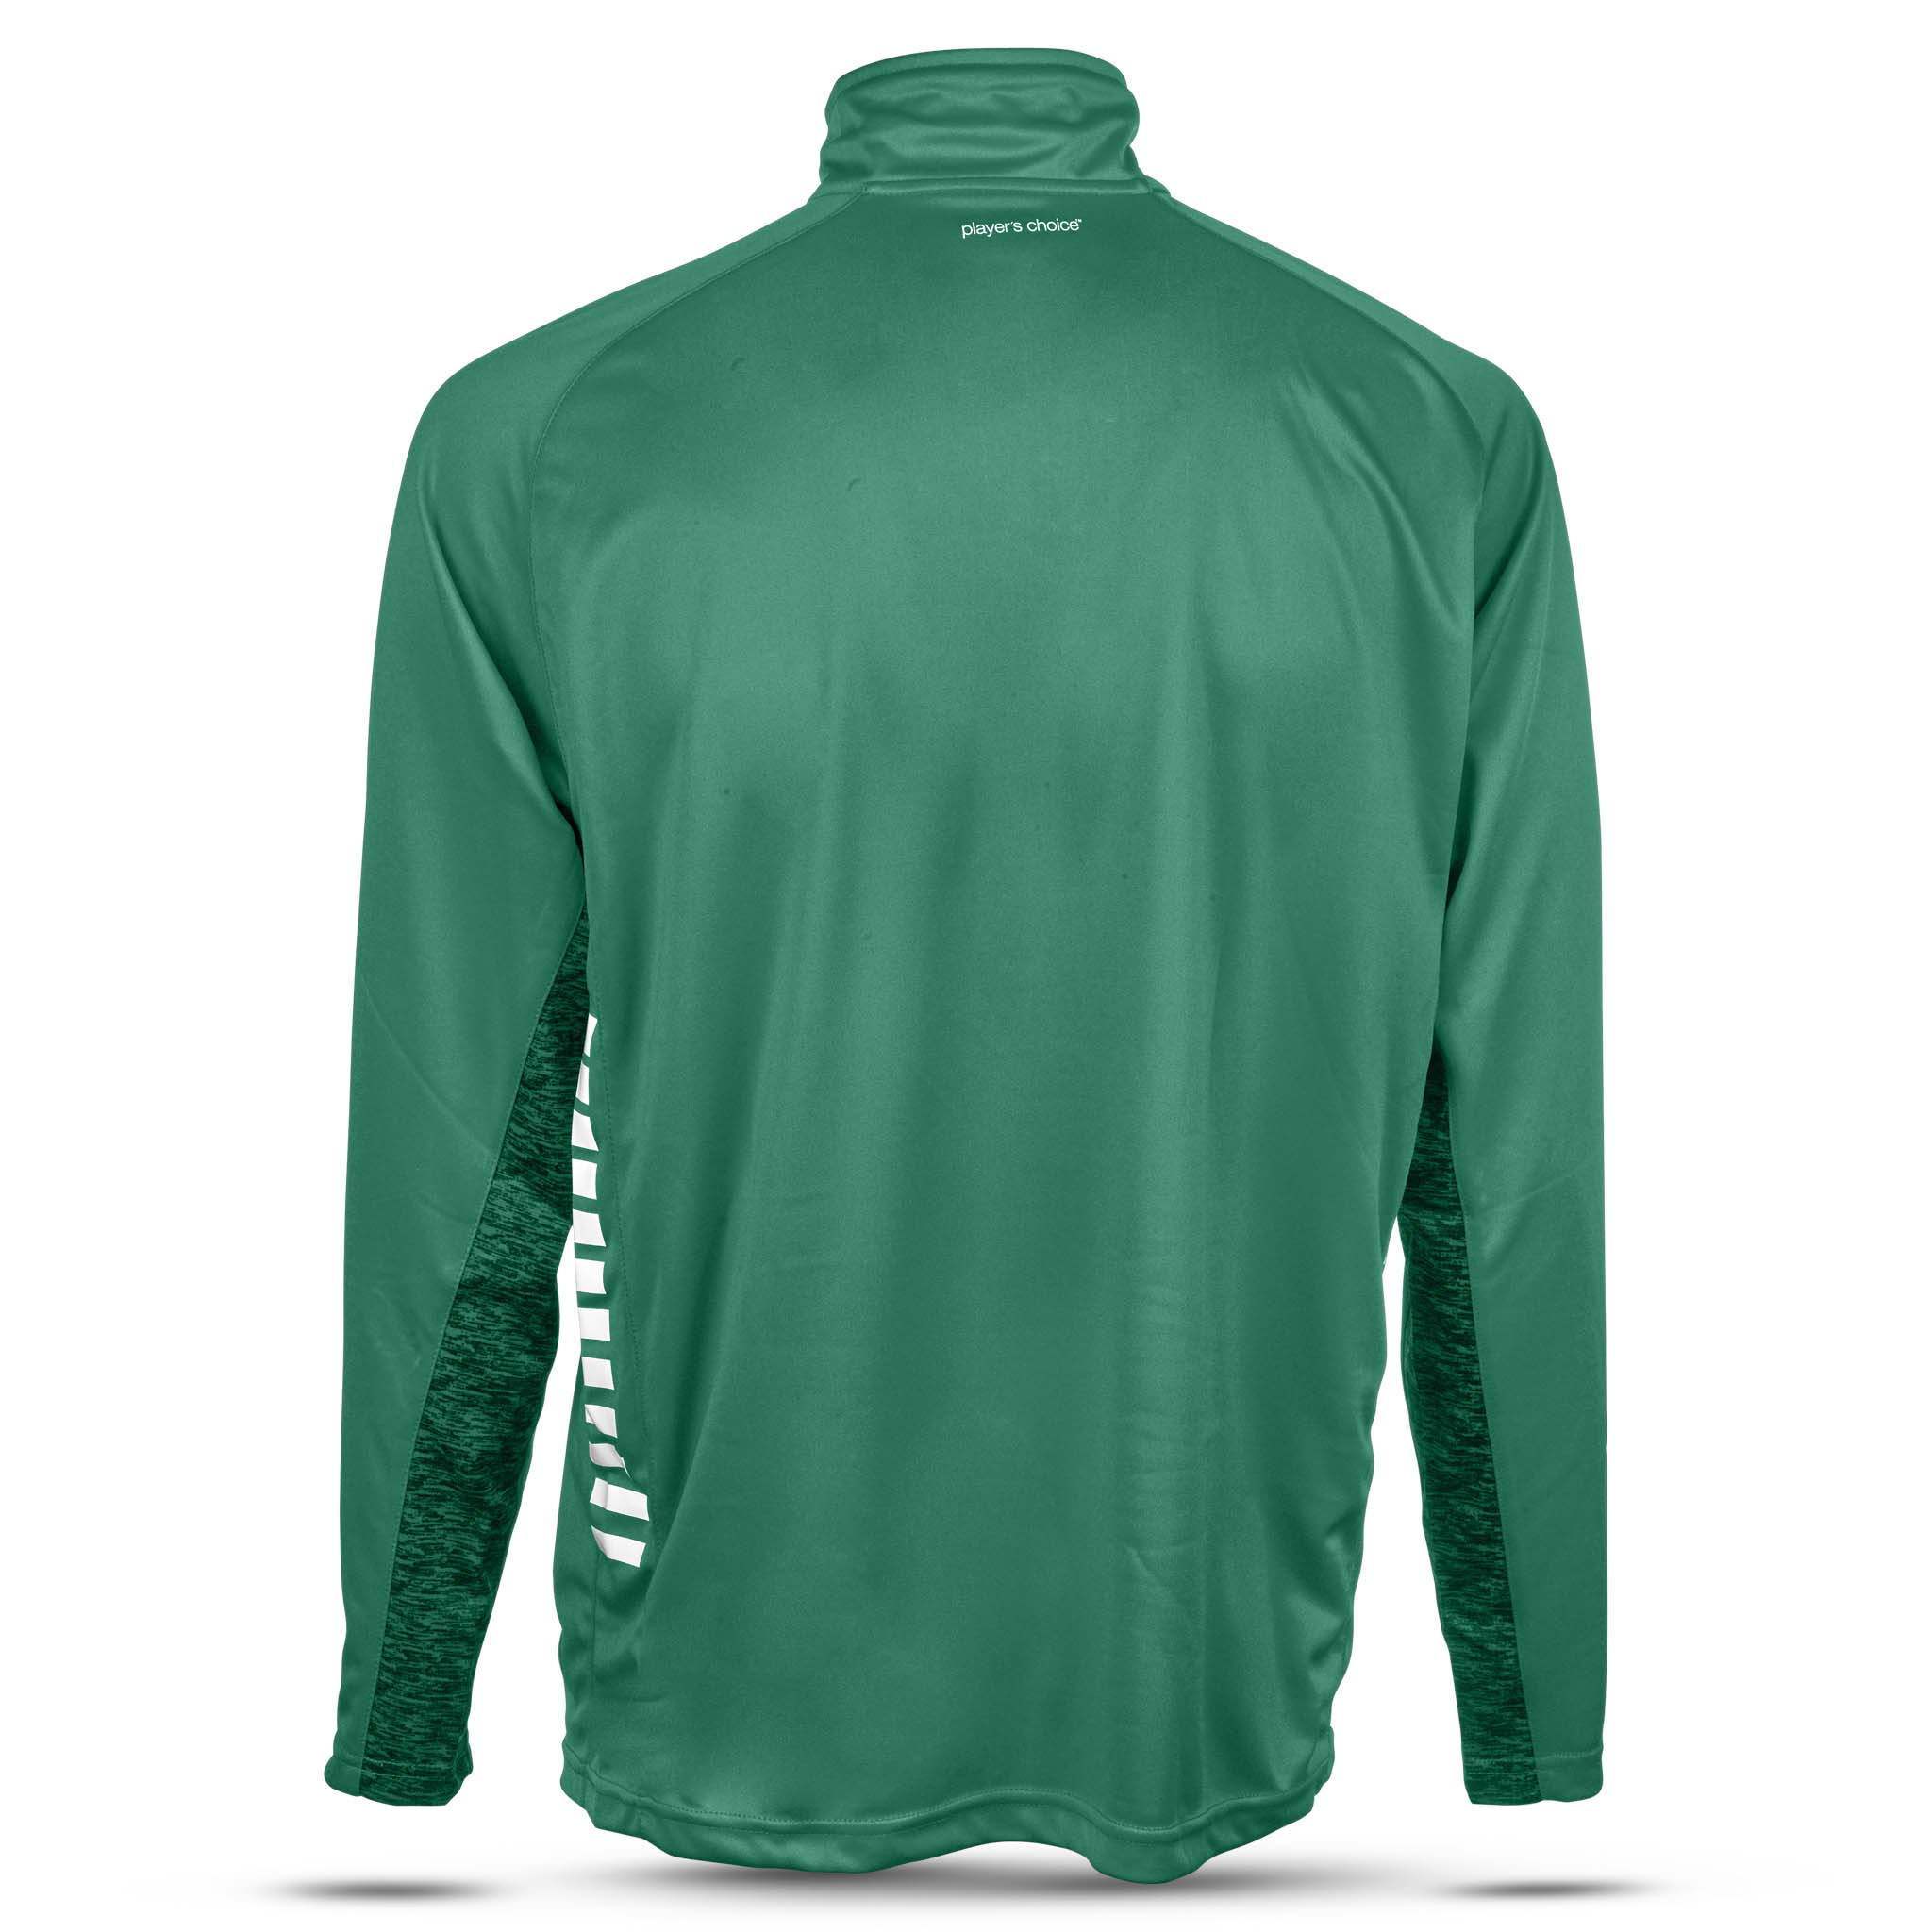 Spain Træningssweatshirt 1/2 lynlås - Børn #farve_grøn